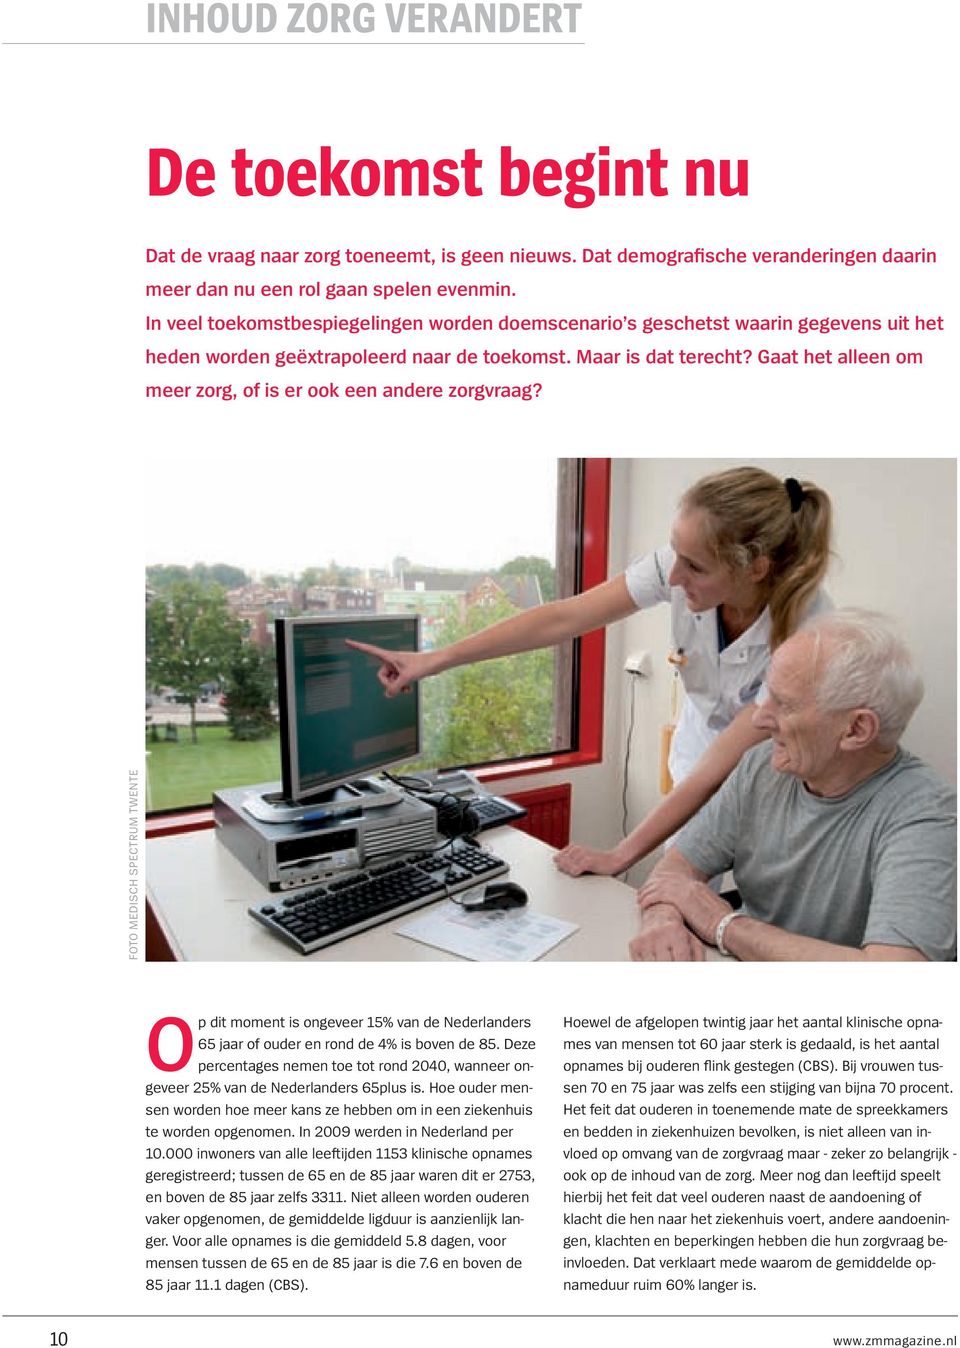 Gaat het alleen om meer zorg, of is er ook een andere zorgvraag? foto medisch spectrum twente Op dit moment is ongeveer 15% van de Nederlanders 65 jaar of ouder en rond de 4% is boven de 85.